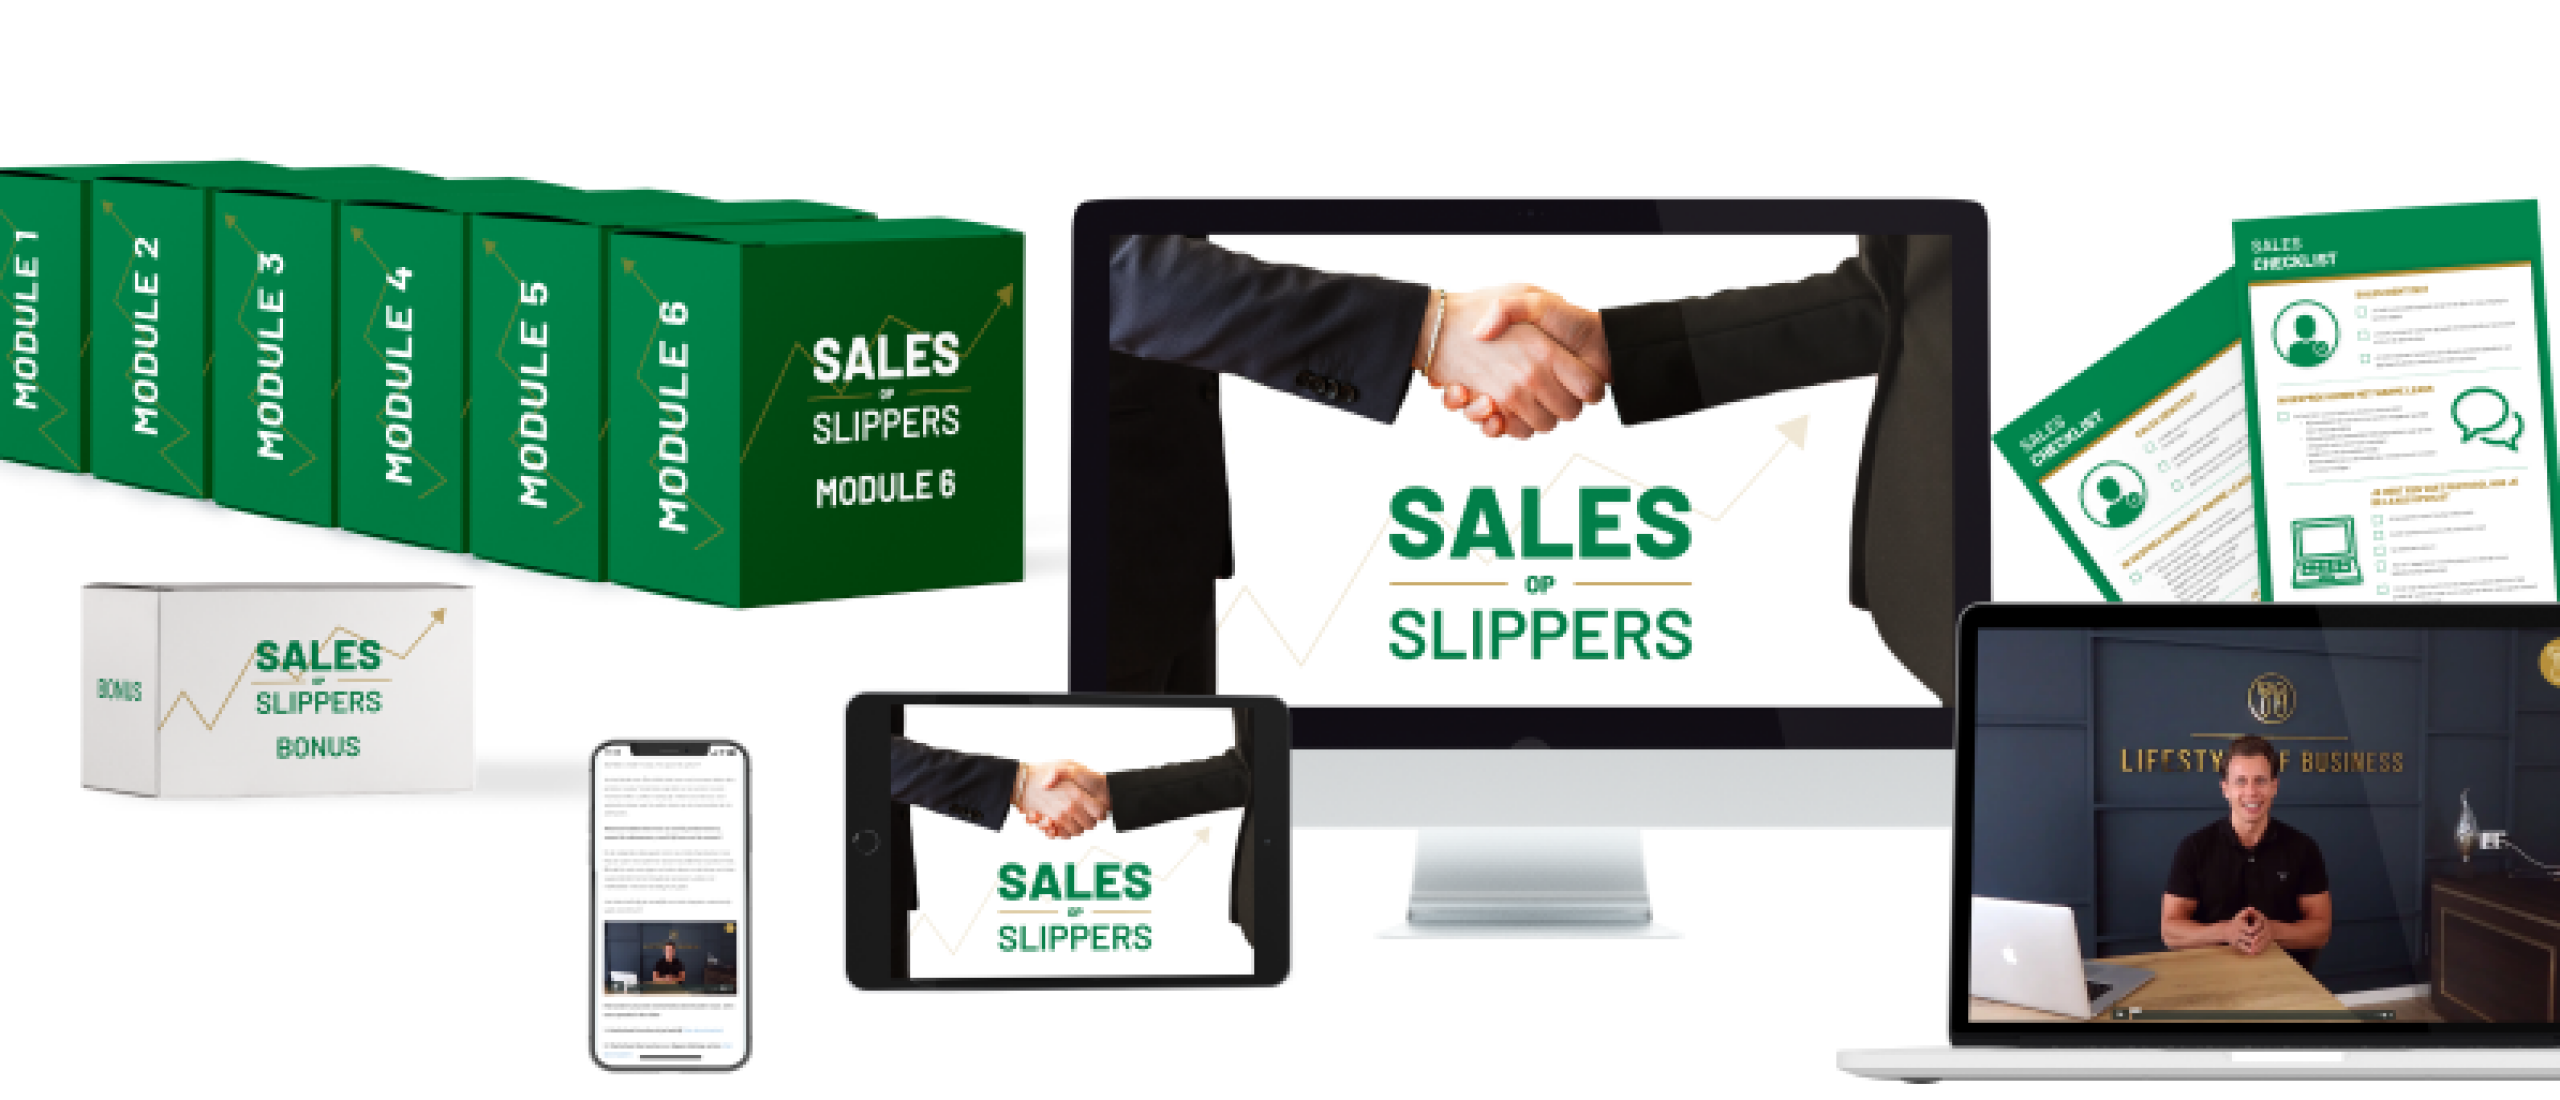 Lifestyle Of Business - Sales op slippers cursus - Meer verkopen - Review & Ervaringen